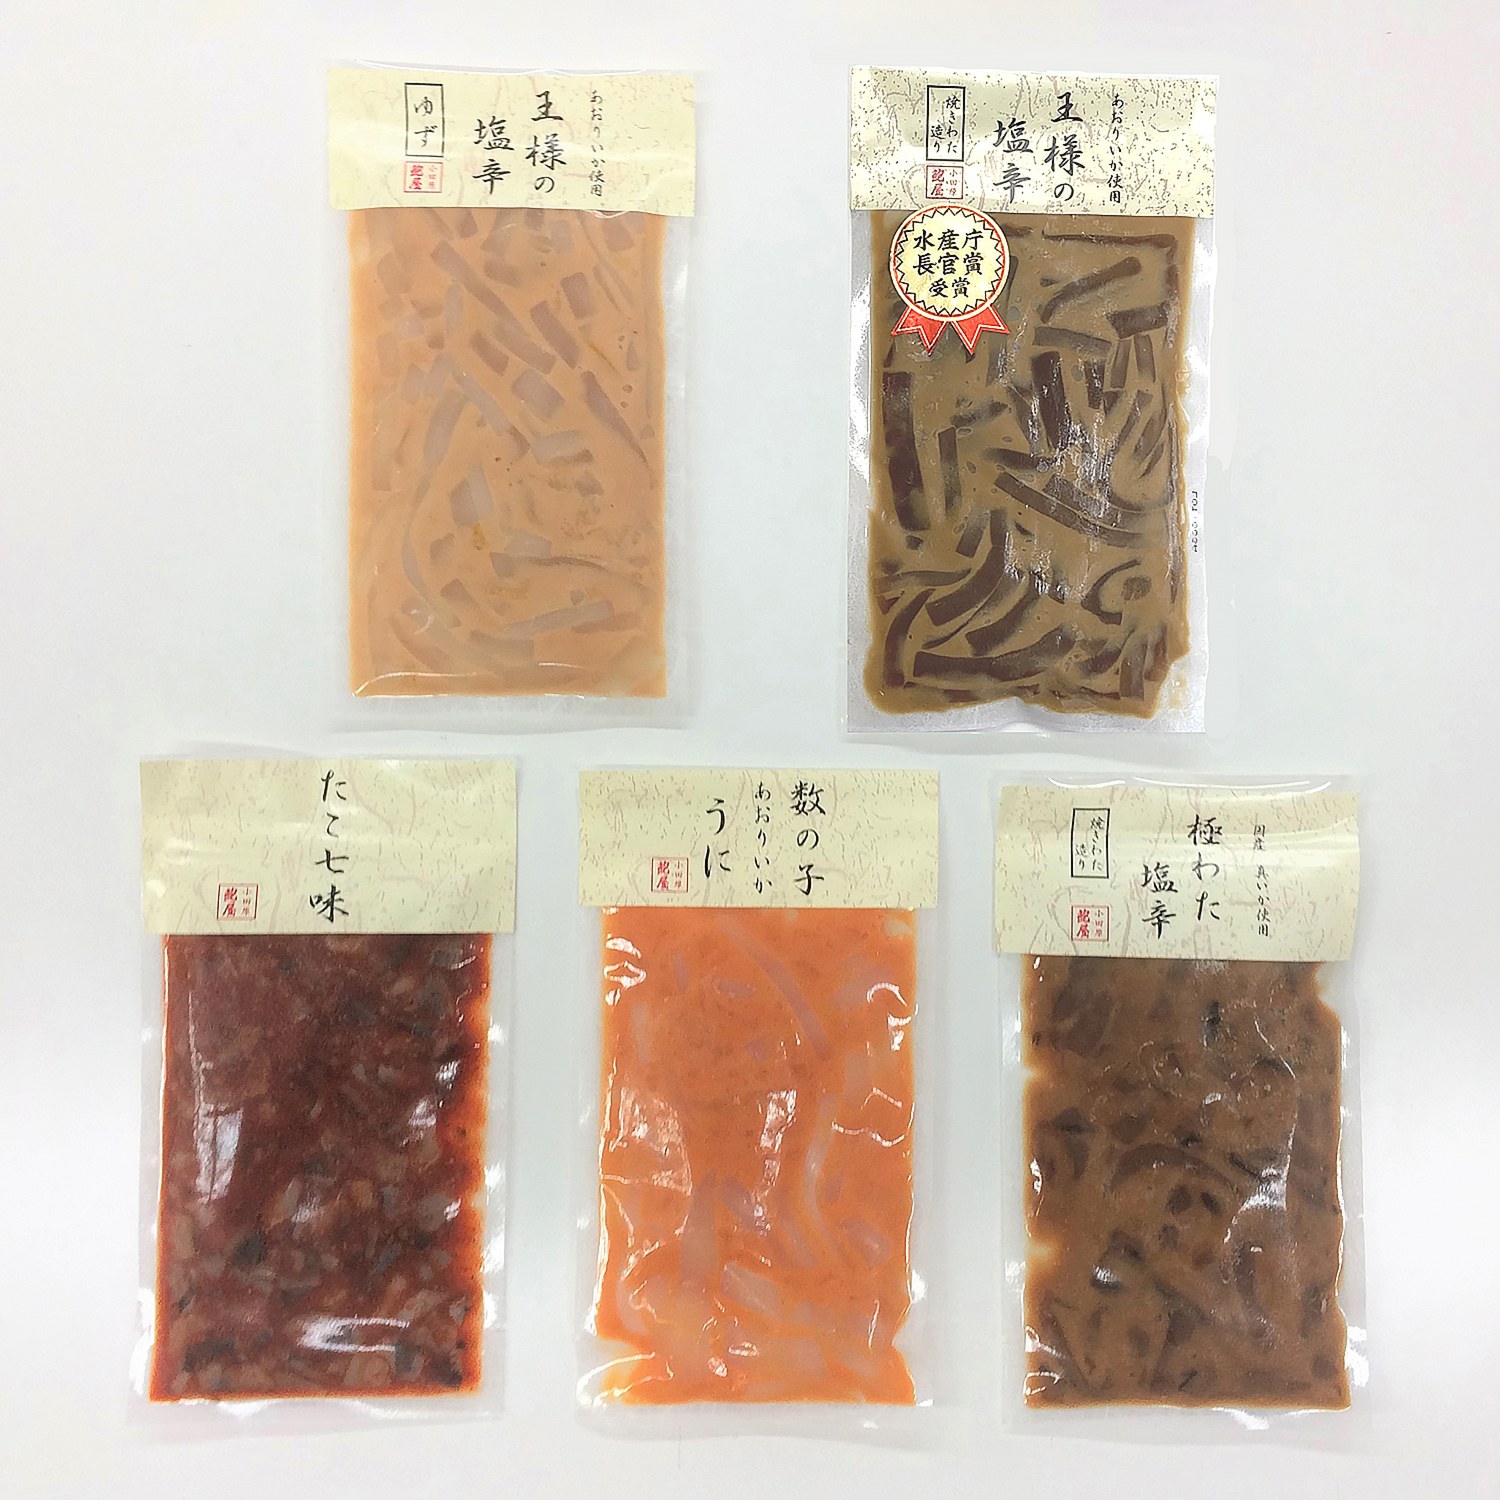 小田原の
老舗魚問屋が作った
珍味５種セット